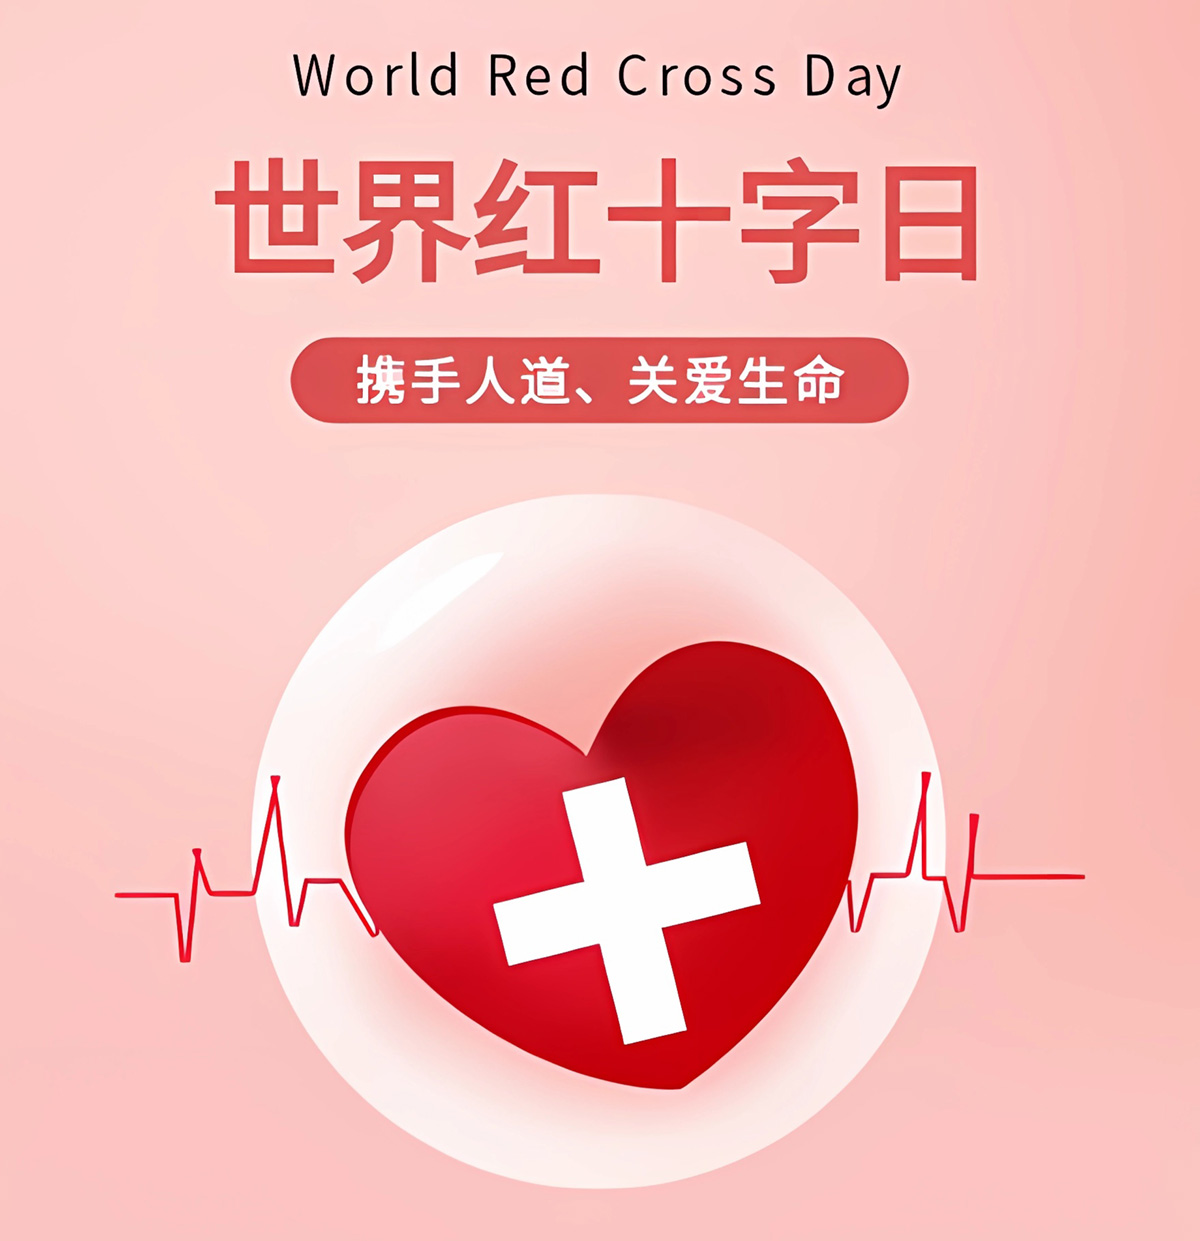 世界红十字日，一起守护生命与健康，以人道力量温暖世界